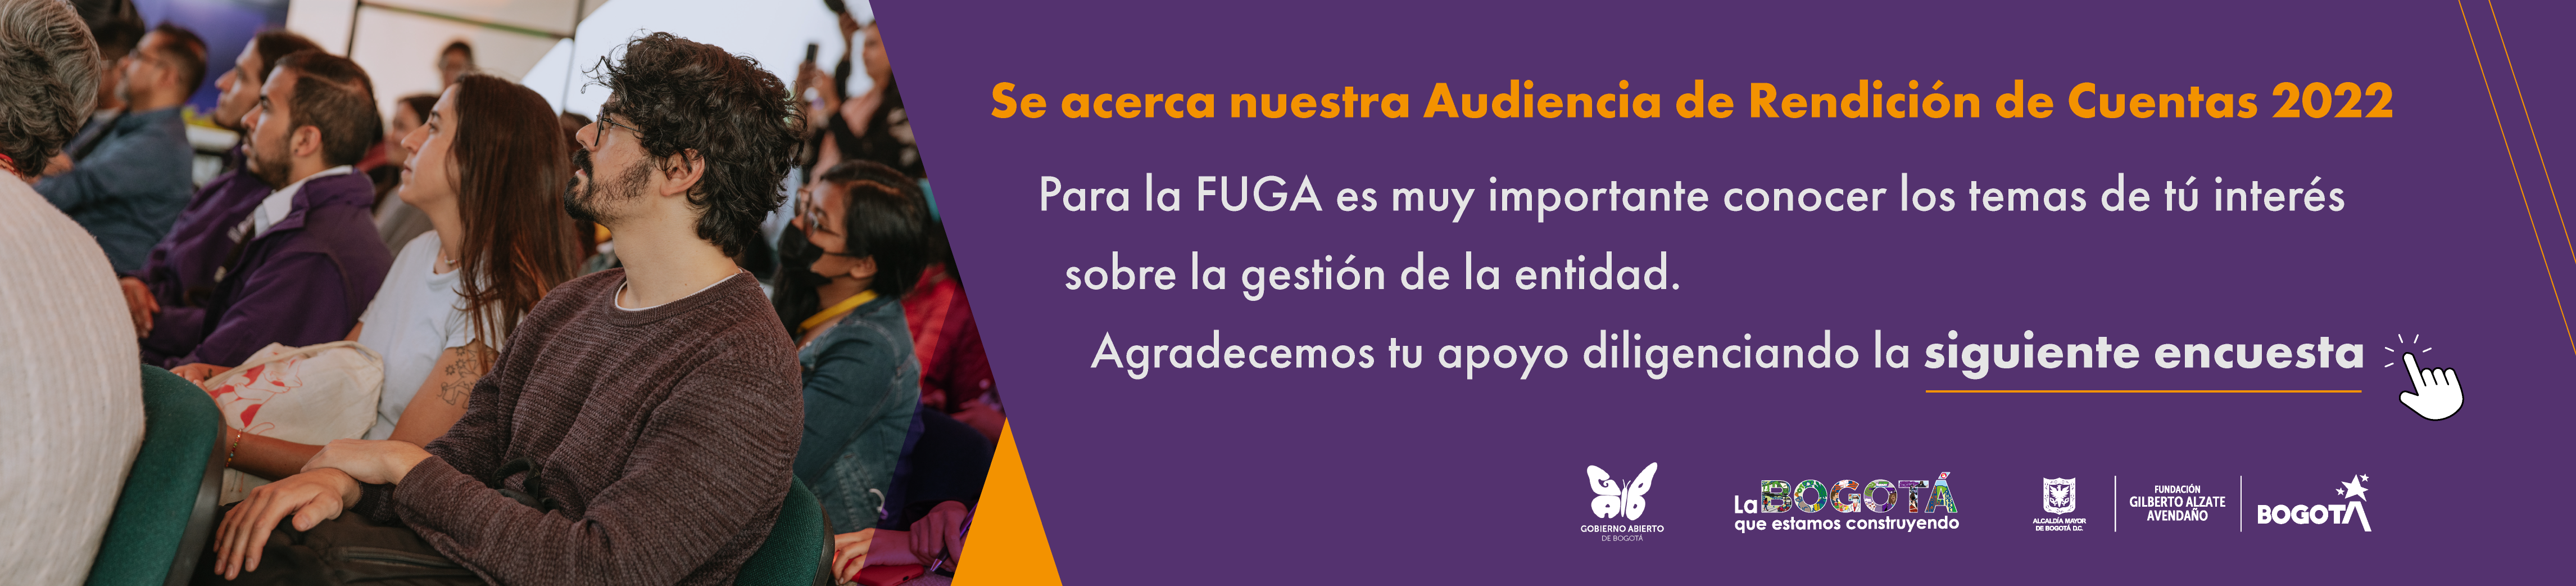 Encuesta sobre temas de interés para la rendición de cuentas FUGA 2022